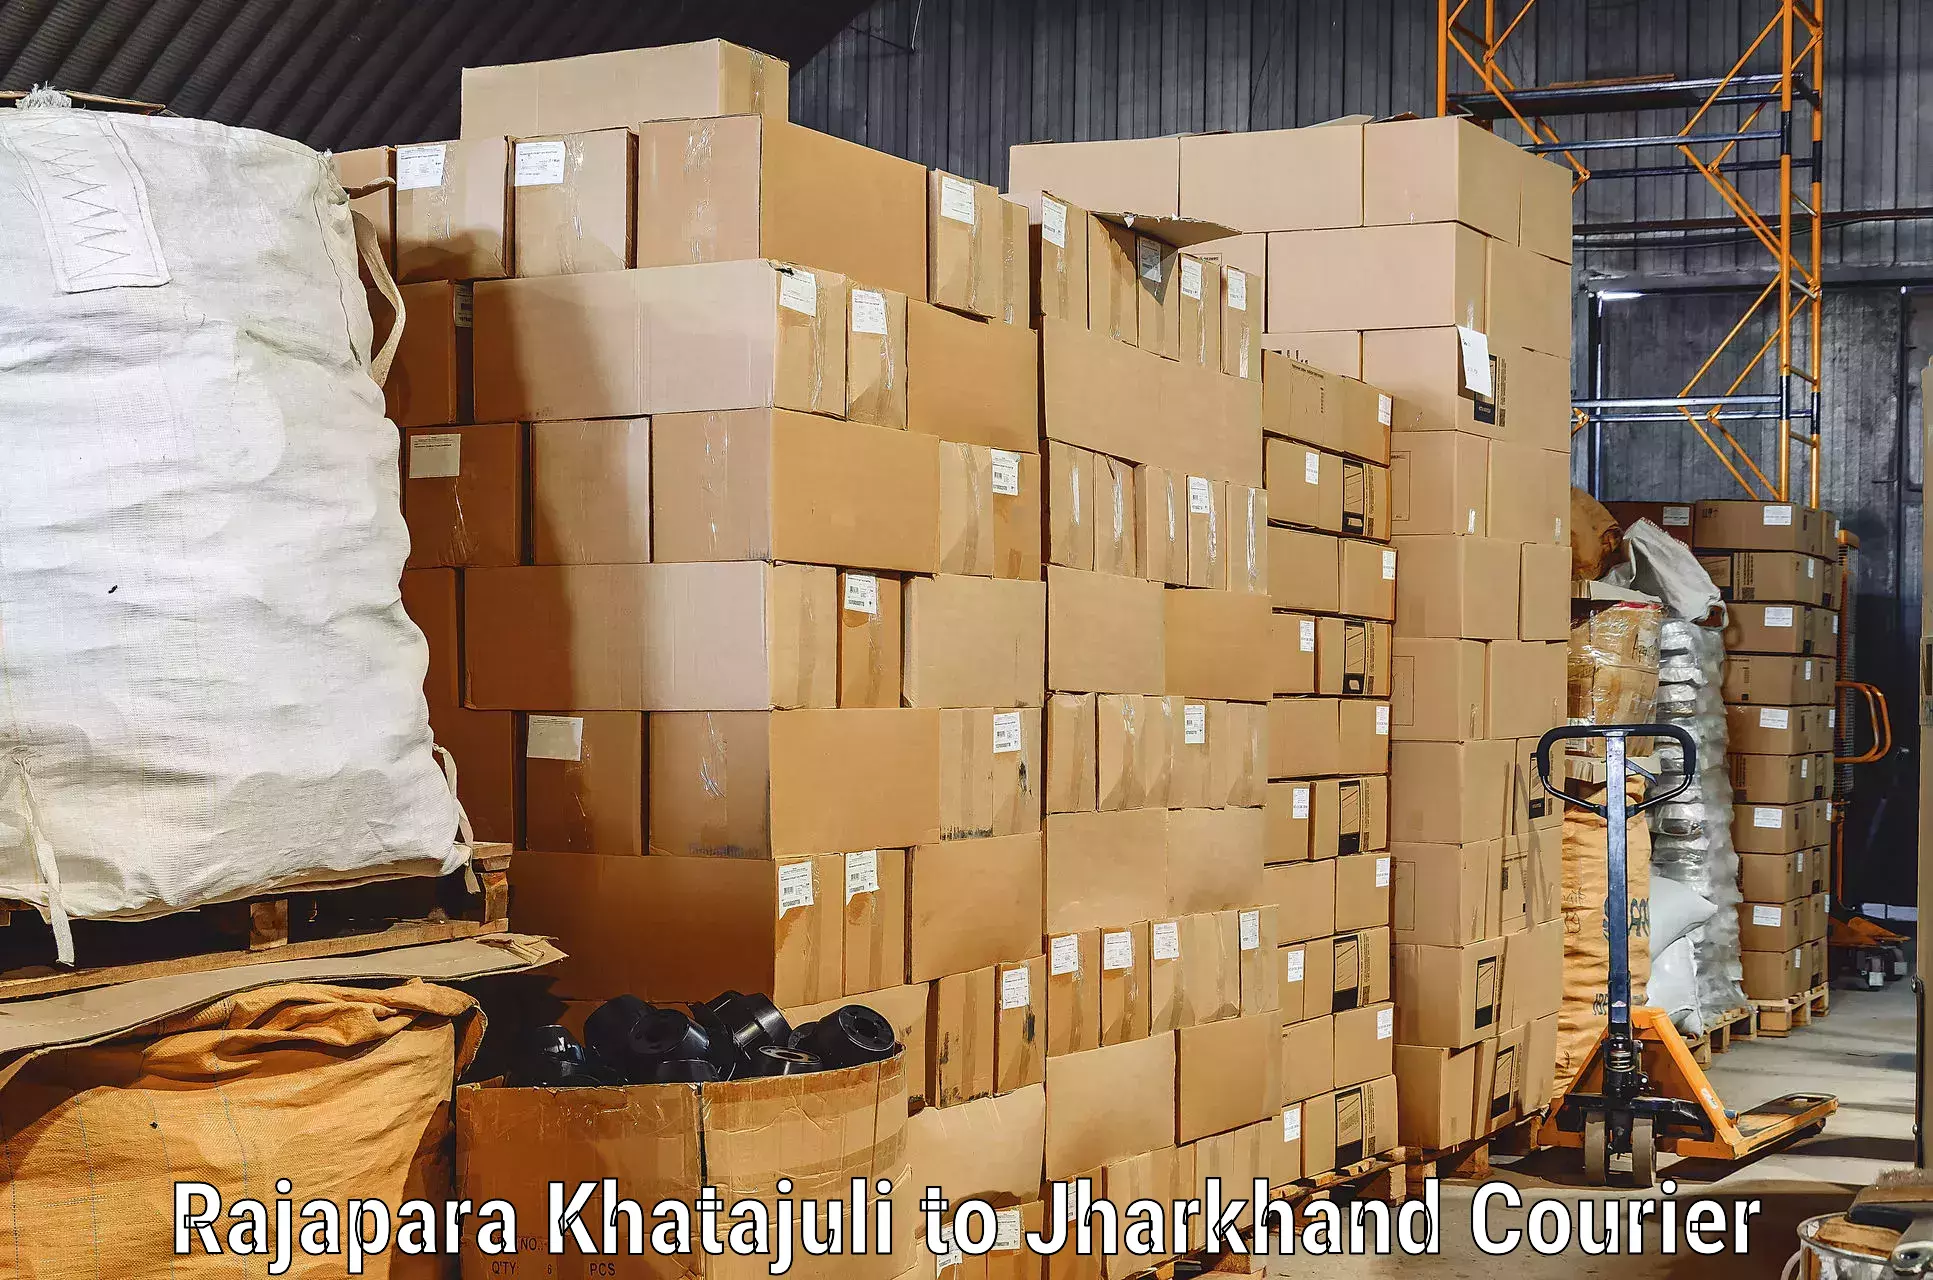 Moving and packing experts Rajapara Khatajuli to Bagodar